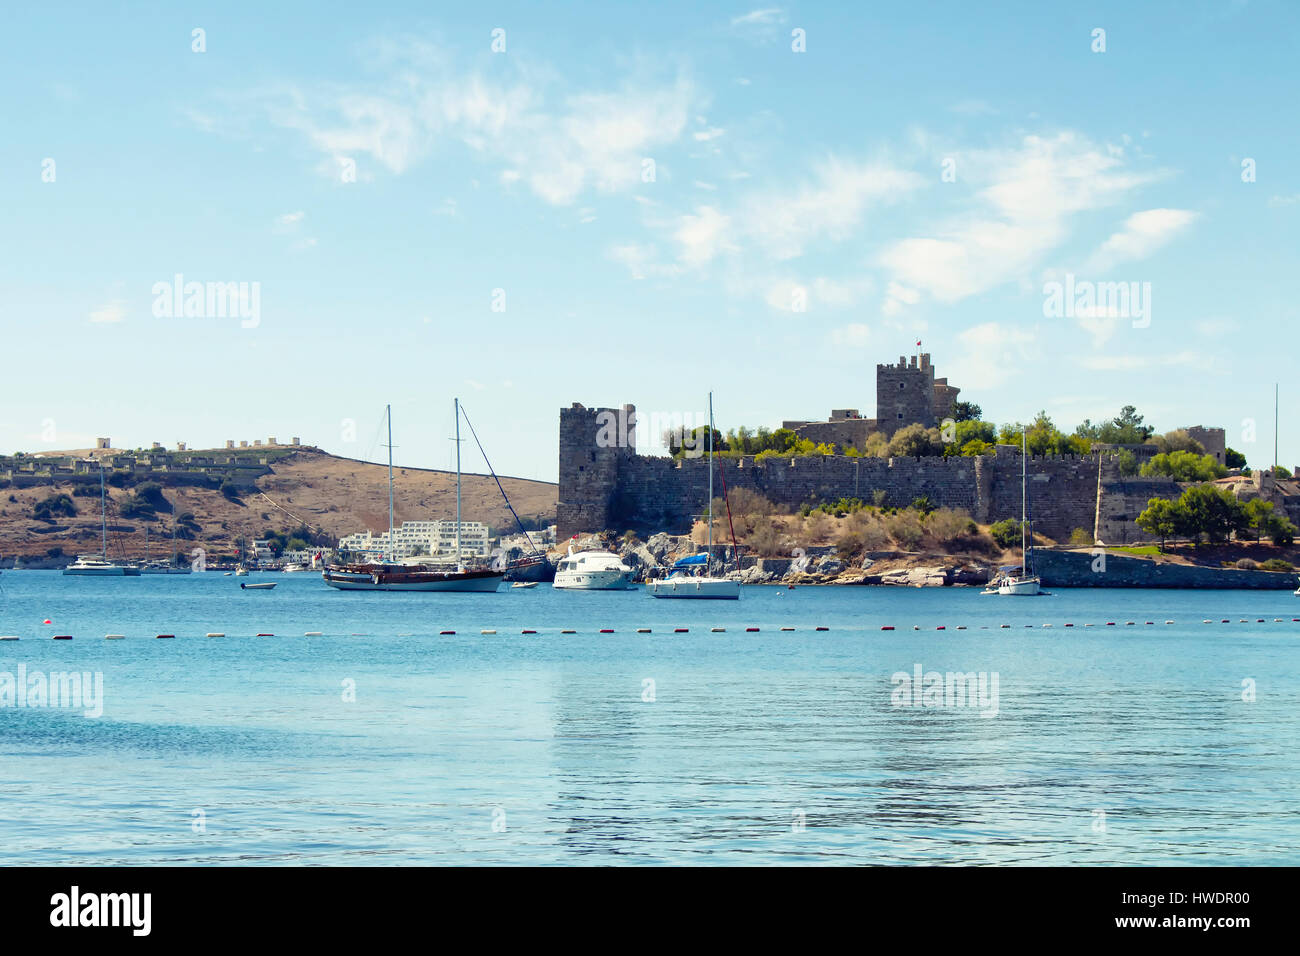 Yachts (bateaux à voile) placée sur une eau turquoise devant le château de Bodrum. L'image montre la mer Égée et de la culture méditerranéenne de coastel lifesty Banque D'Images